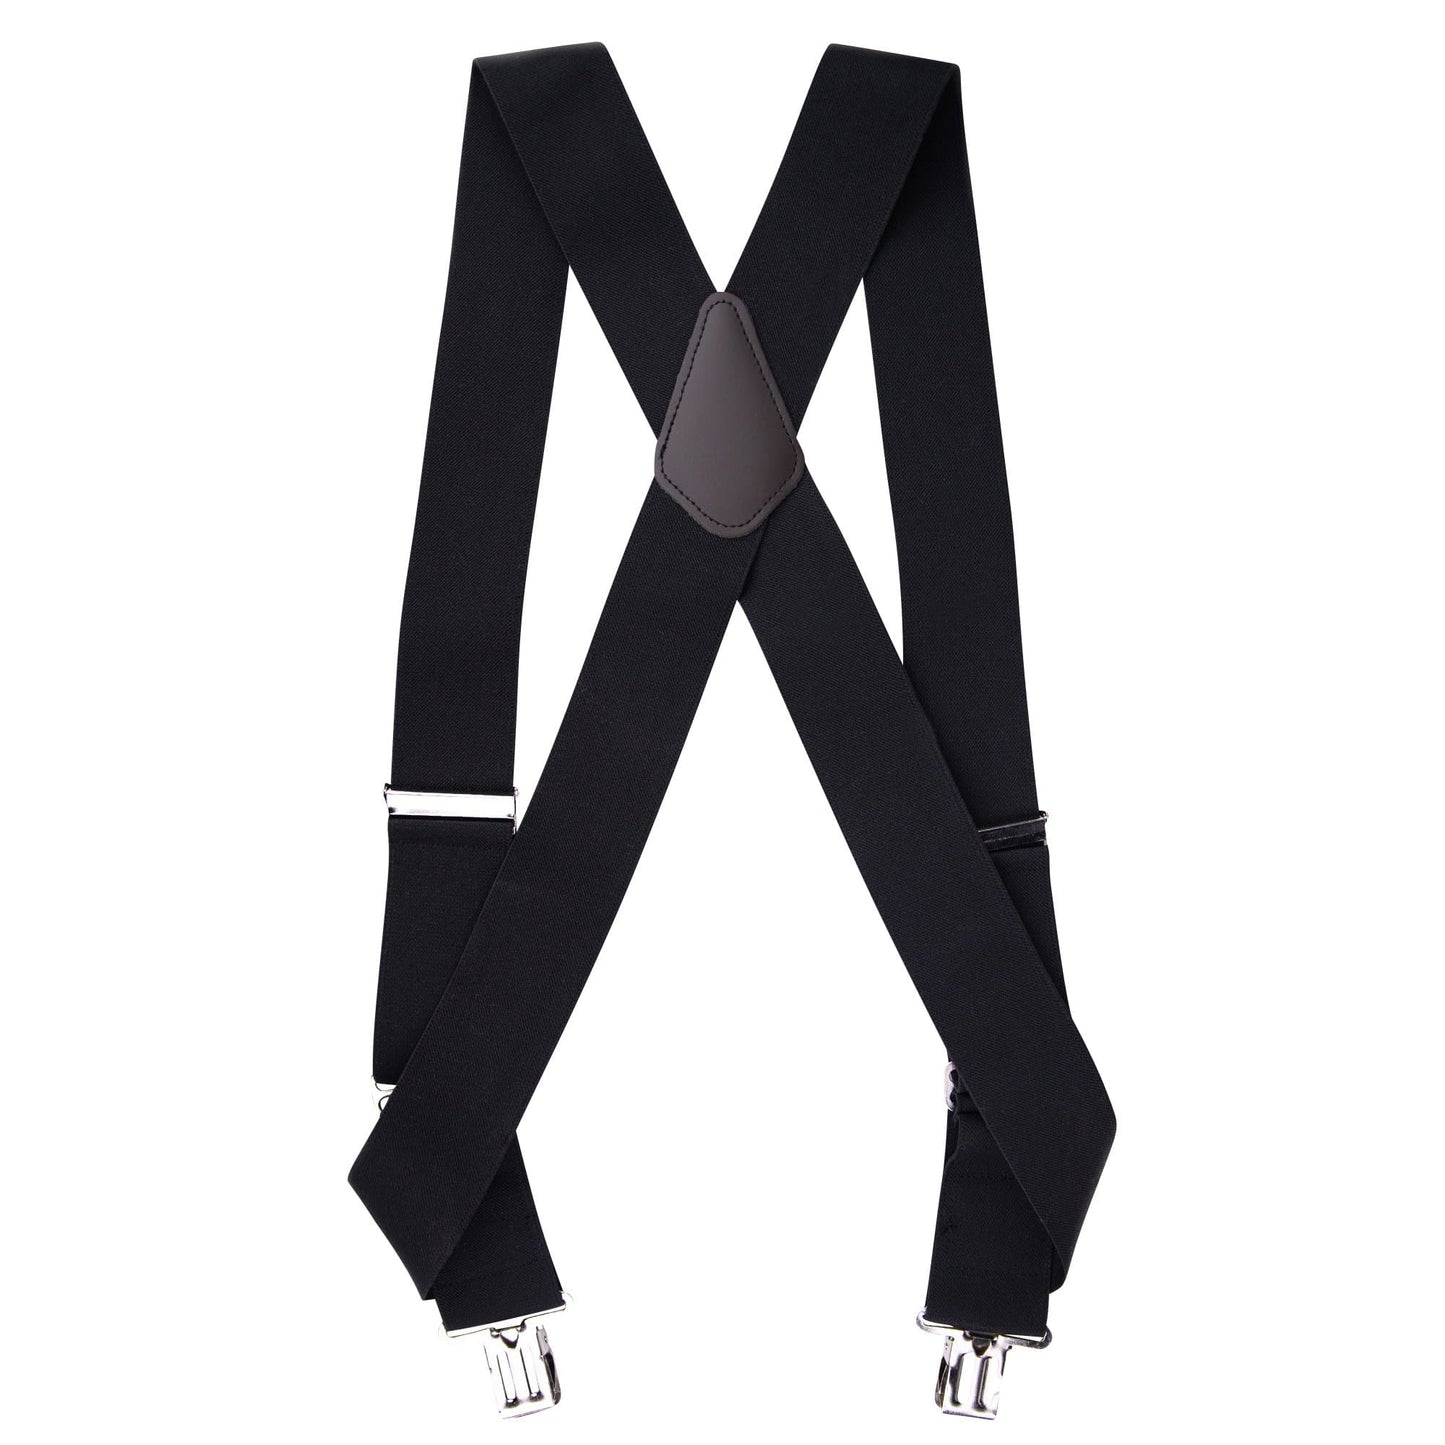 WK Sidewinder Suspenders